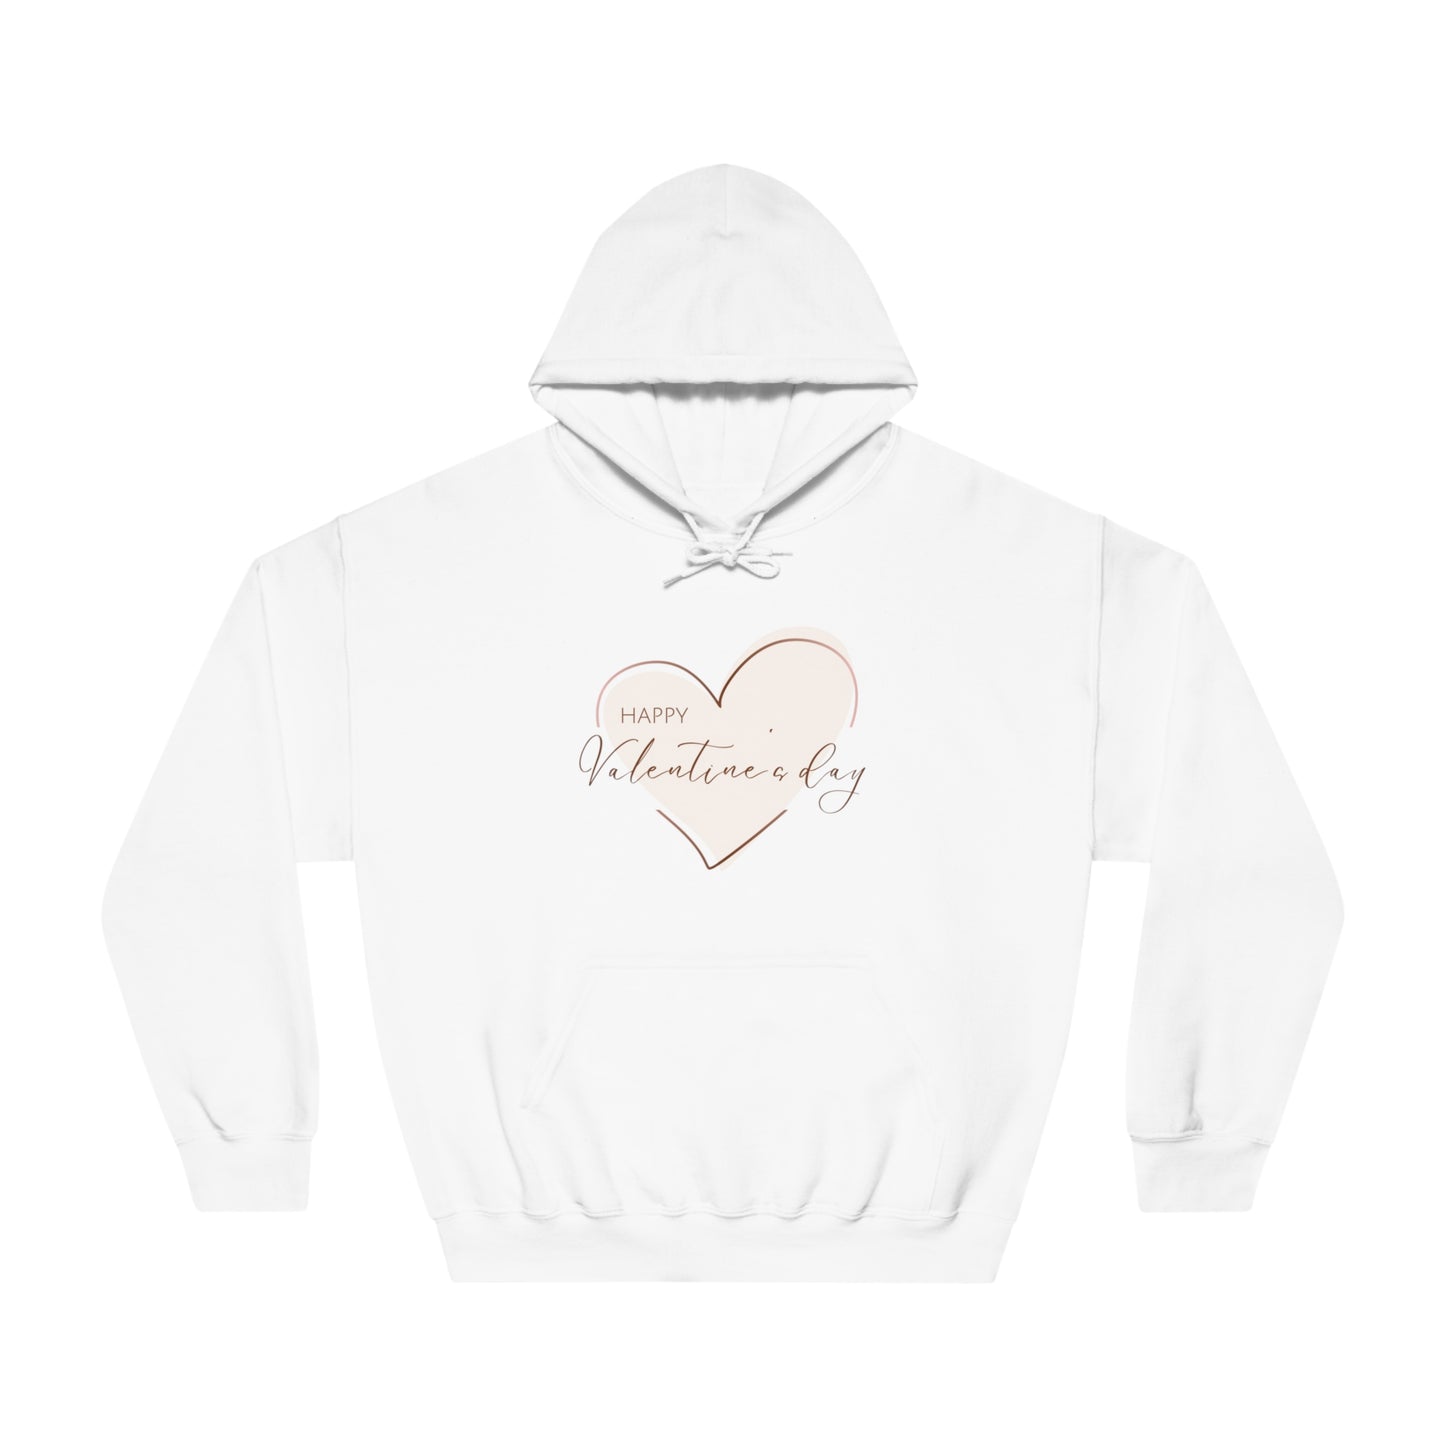 Valentine Sweatshirt for Her and Him, Unisex DryBlend® Hooded Sweatshirt, Valentine's Gift